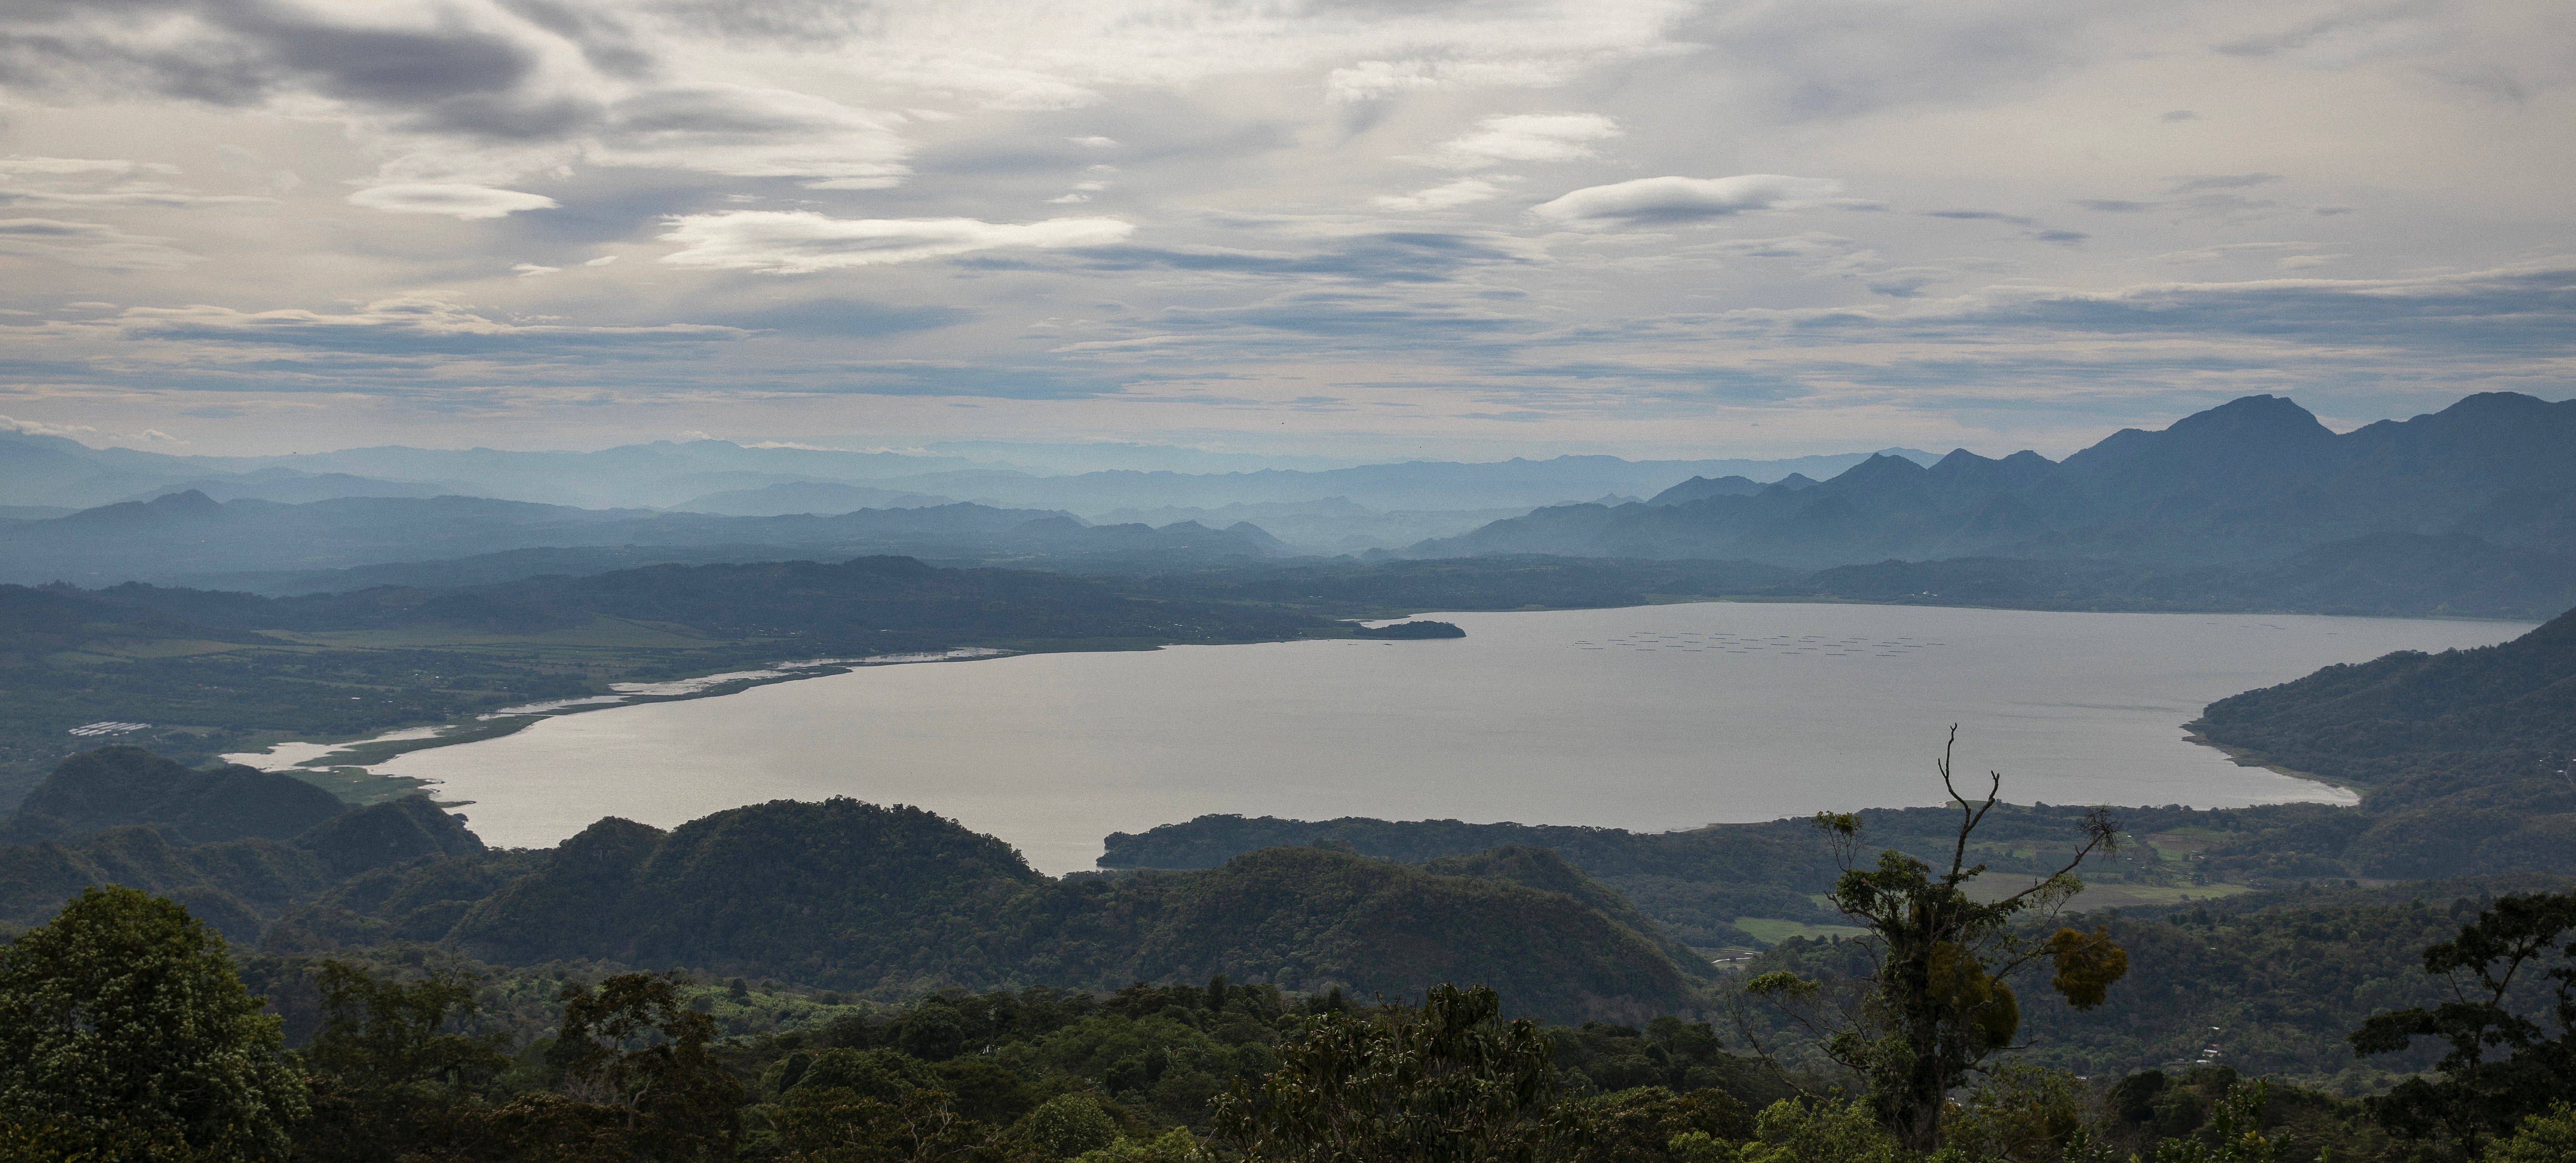 Lake Yojoa, the largest freshwater lake in Honduras, viewed from Santa Bárbara Mountain.